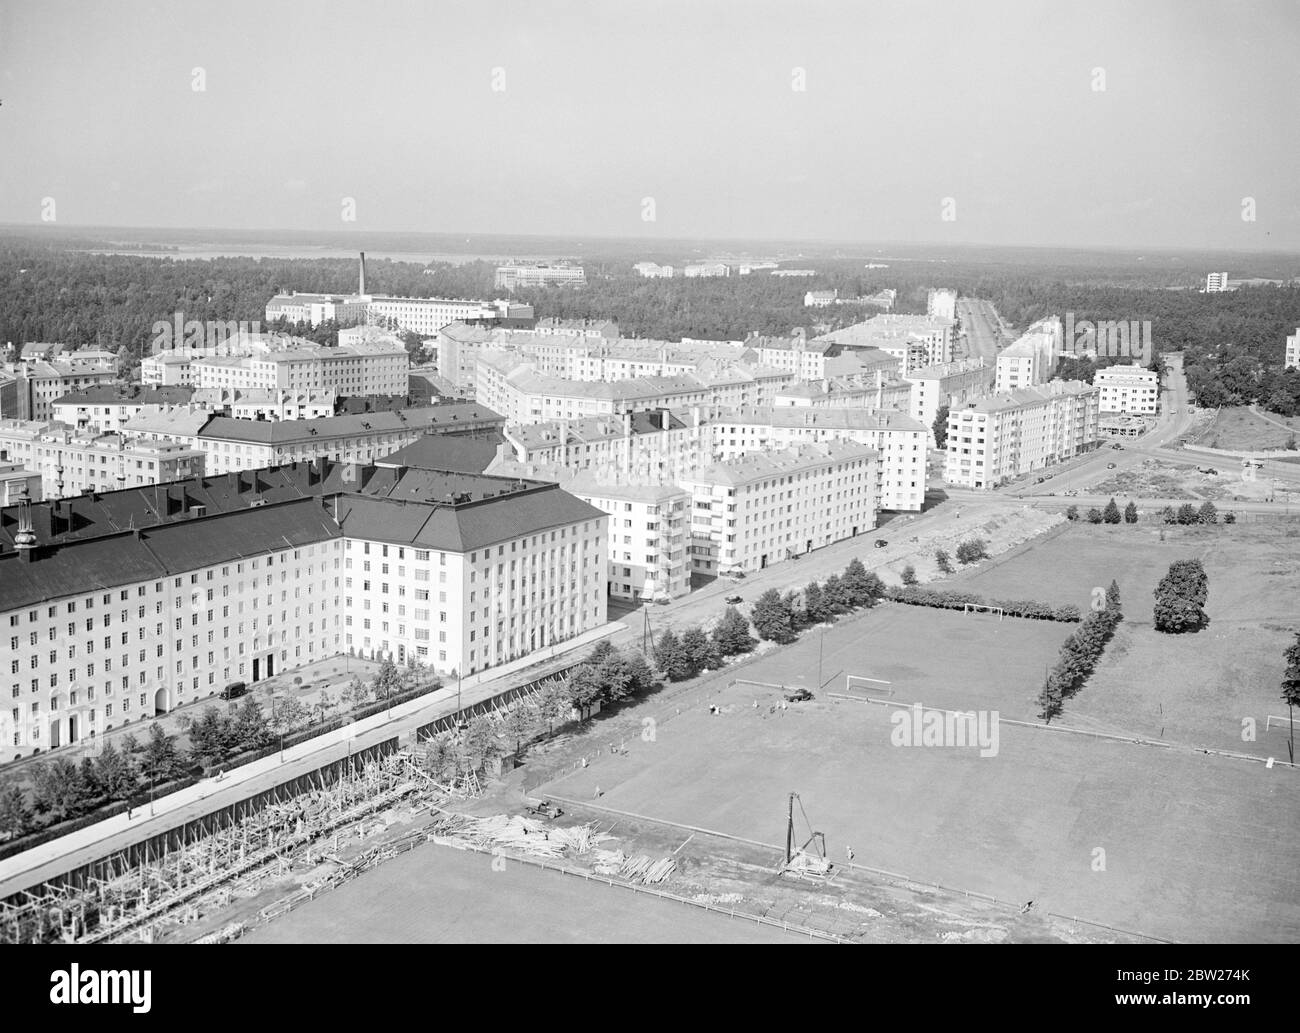 Toolo, quartiere residenziale di Helsinki visto dall'alto. In primo piano sportsgroppund vicino allo Stadio Olimpico in costruzione. Foto Stock